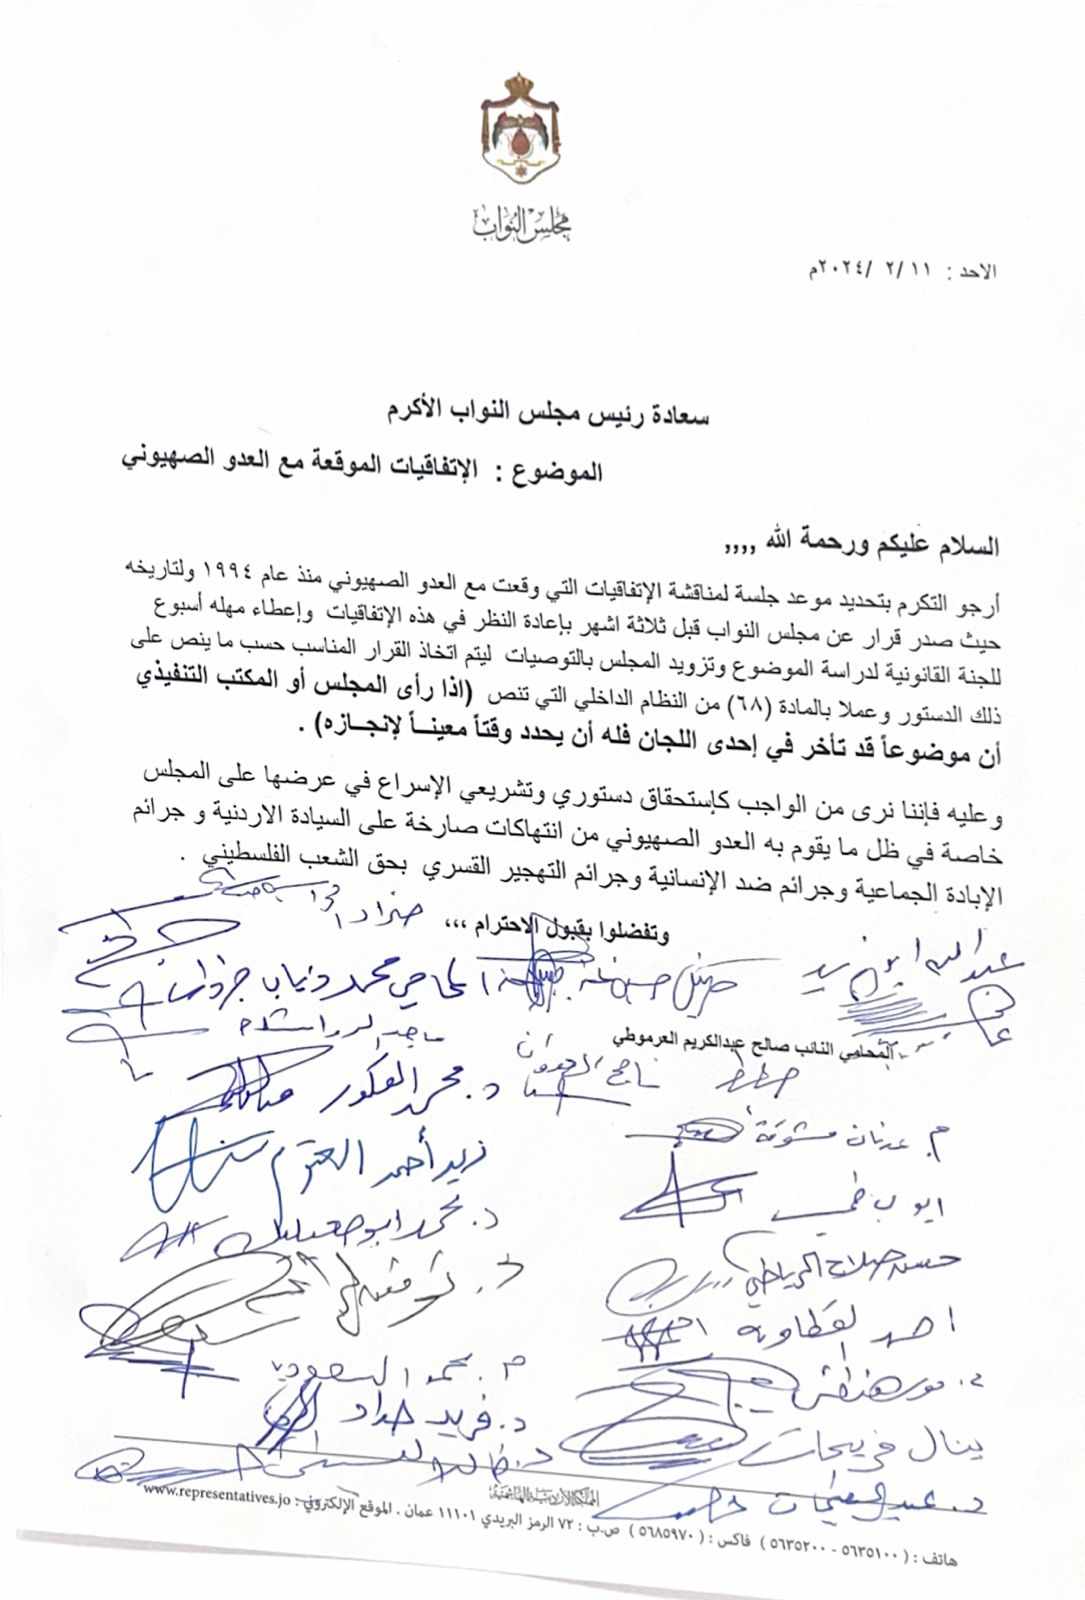 (20) نائبا يطالبون رئيس مجلسهم بعقد جلسة لمناقشة الاتفاقيات مع الكيان الصهيوني - اسماء